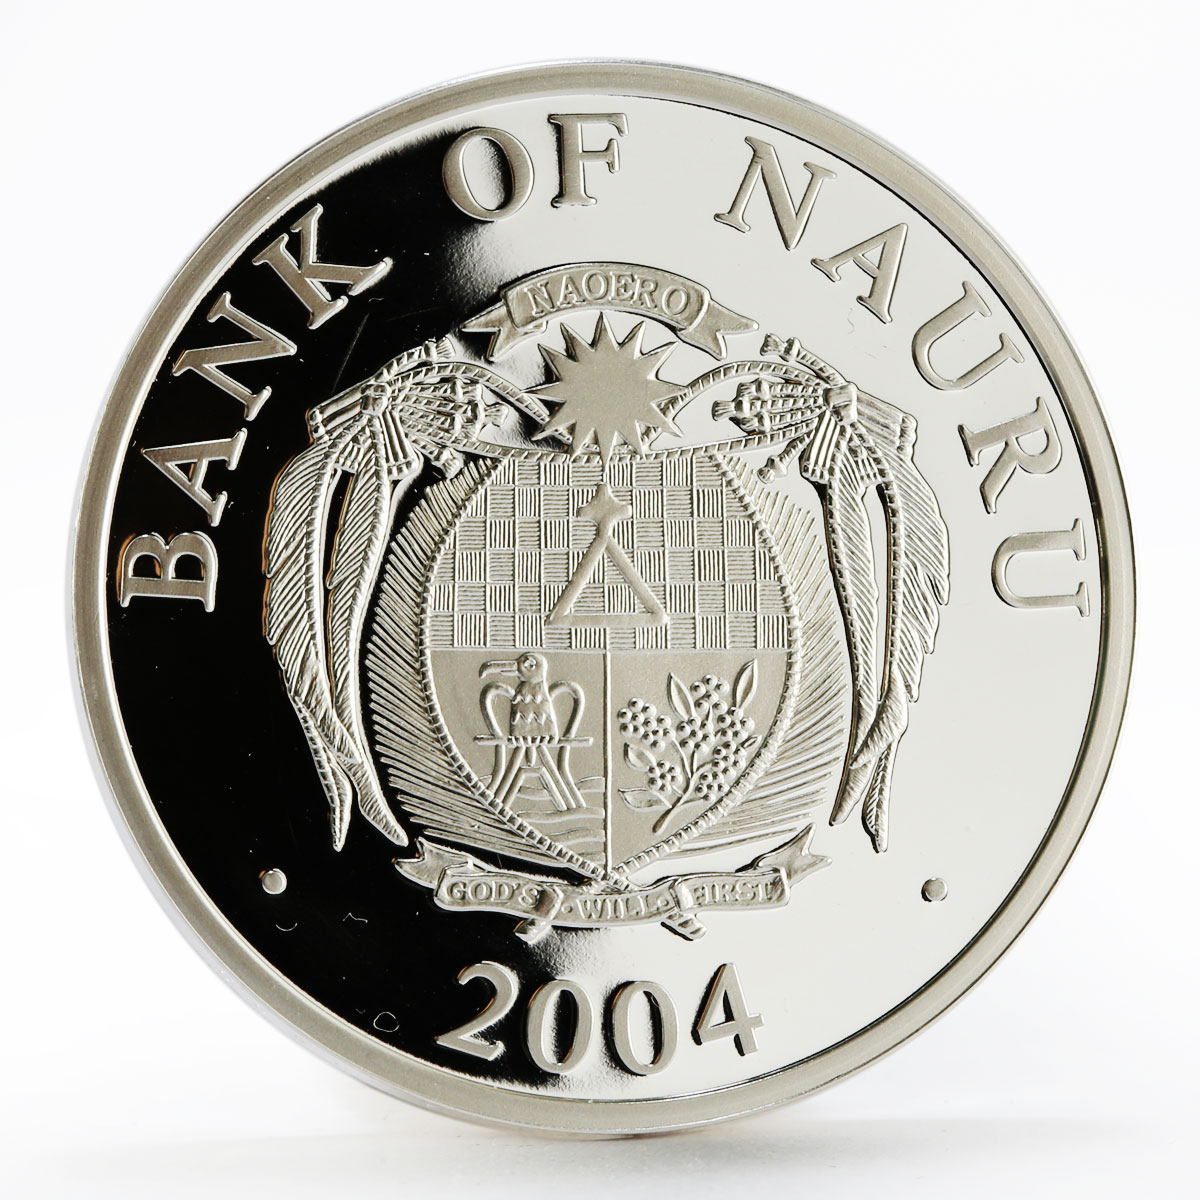 Nauru 10 dollars European Monuments Dresden Frauenkirche Church silver coin 2004